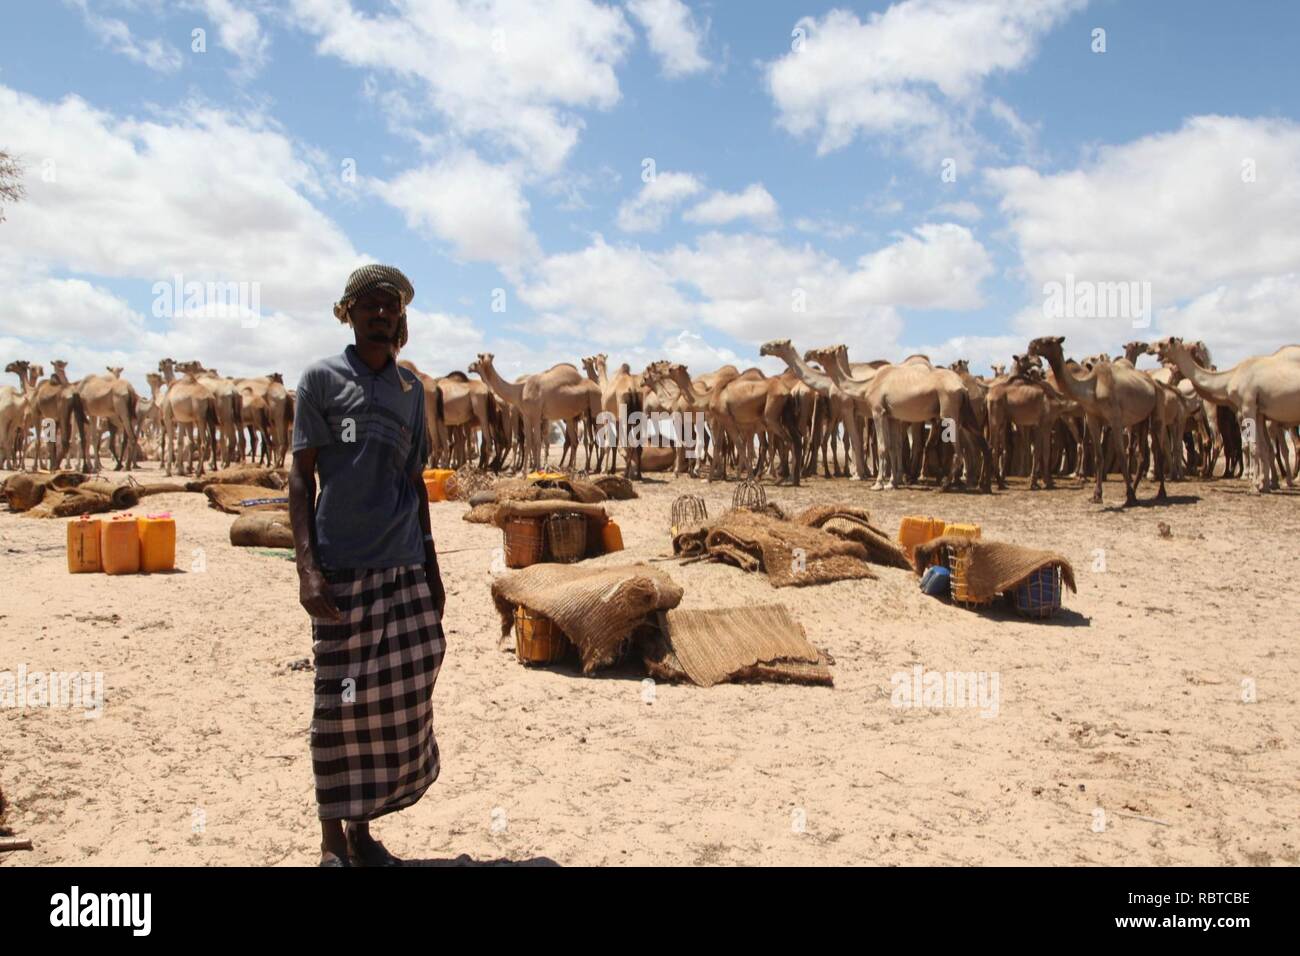 Un homme se tient debout devant un groupe de chameaux dans la ville d'Adale, en Somalie. Des soldats burundais, dans le cadre de la Mission de l'Union africaine en Somalie, hier, ont libéré la ville d'Adale dans l'(15411750086). Banque D'Images